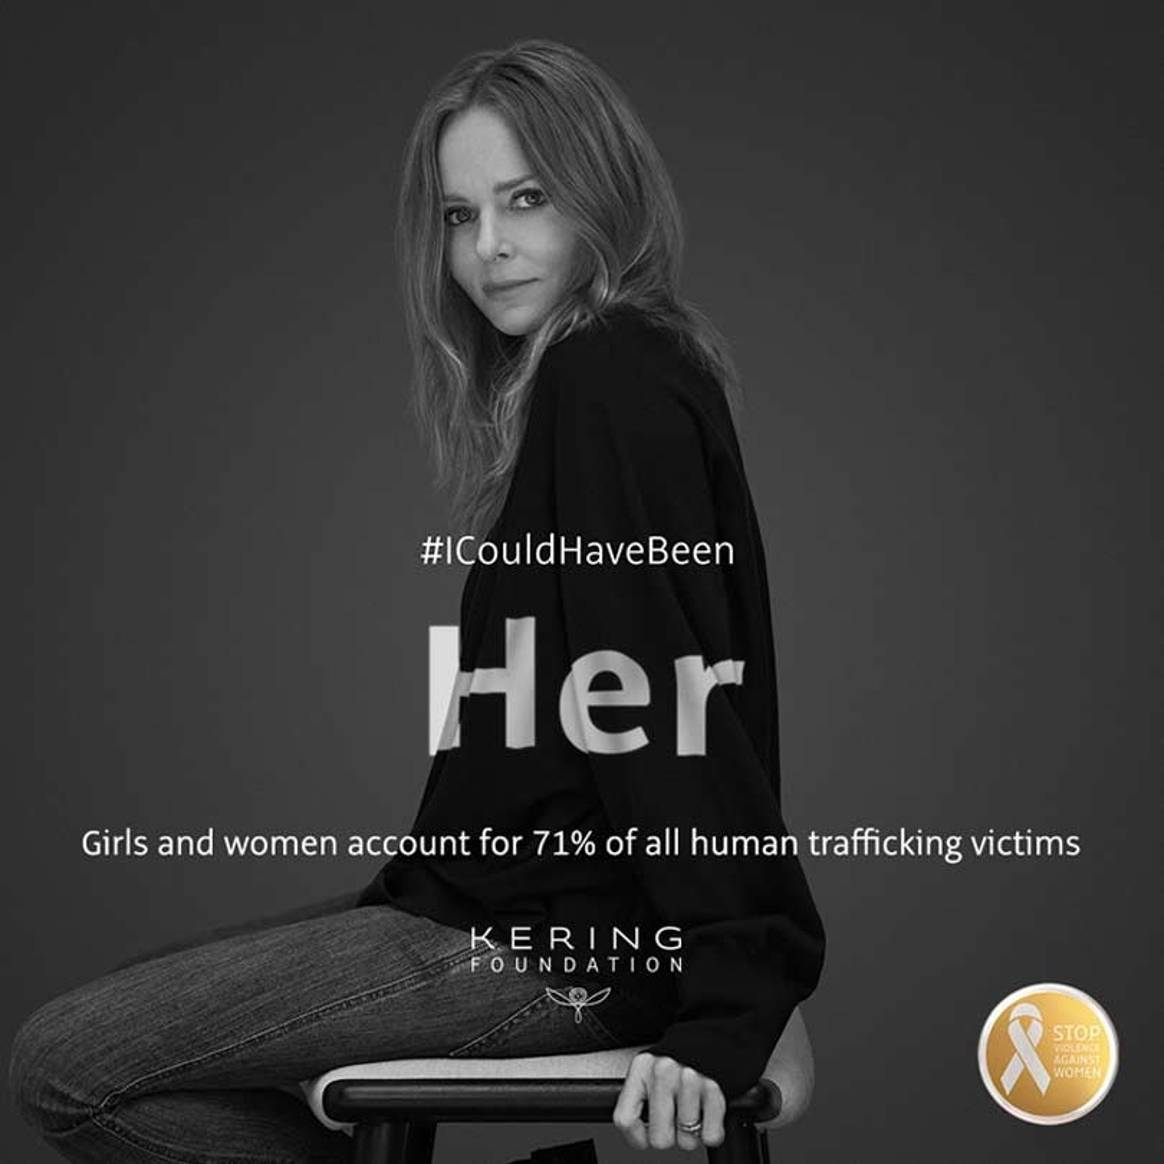 #ICouldHaveBeen: Campaña de Fundación Kering para poner fin a la violencia contra las mujeres